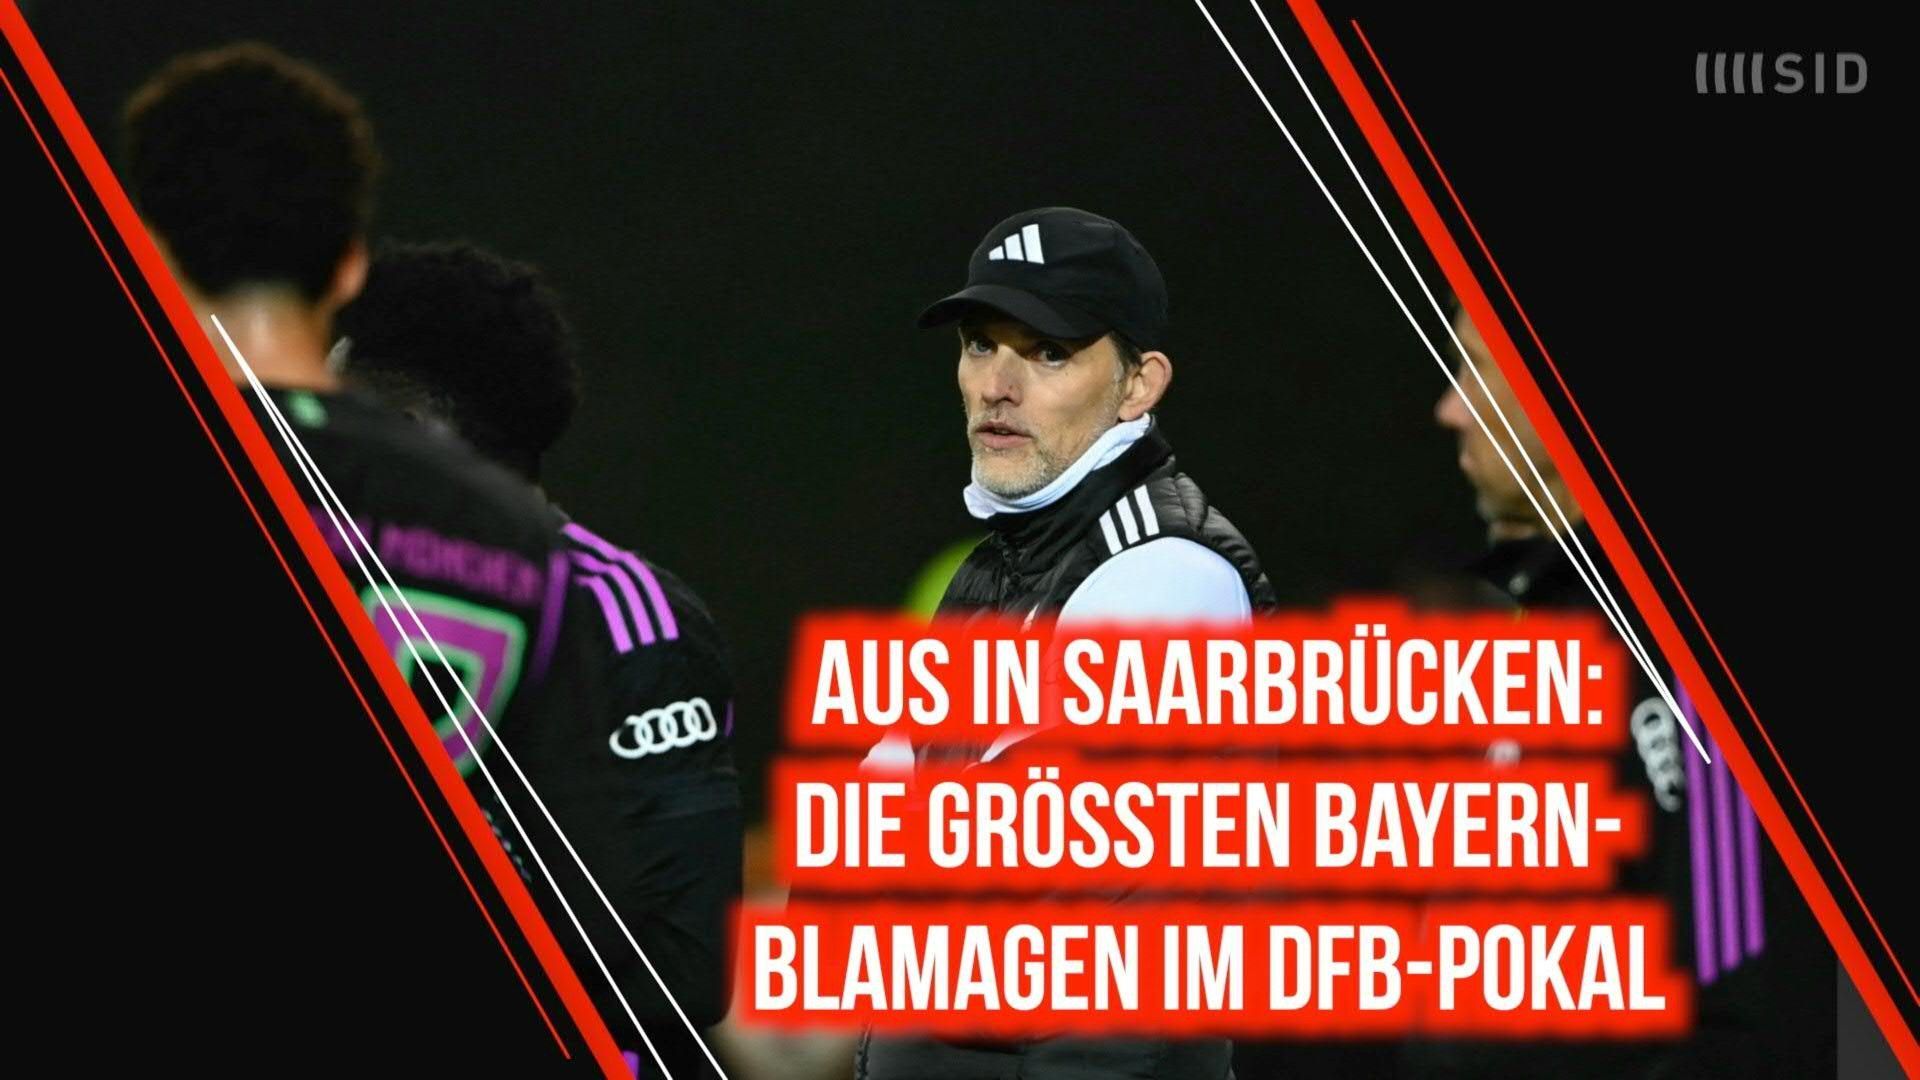 Aus in Saarbrücken: Die größten Bayern-Blamagen im DFB-Pokal